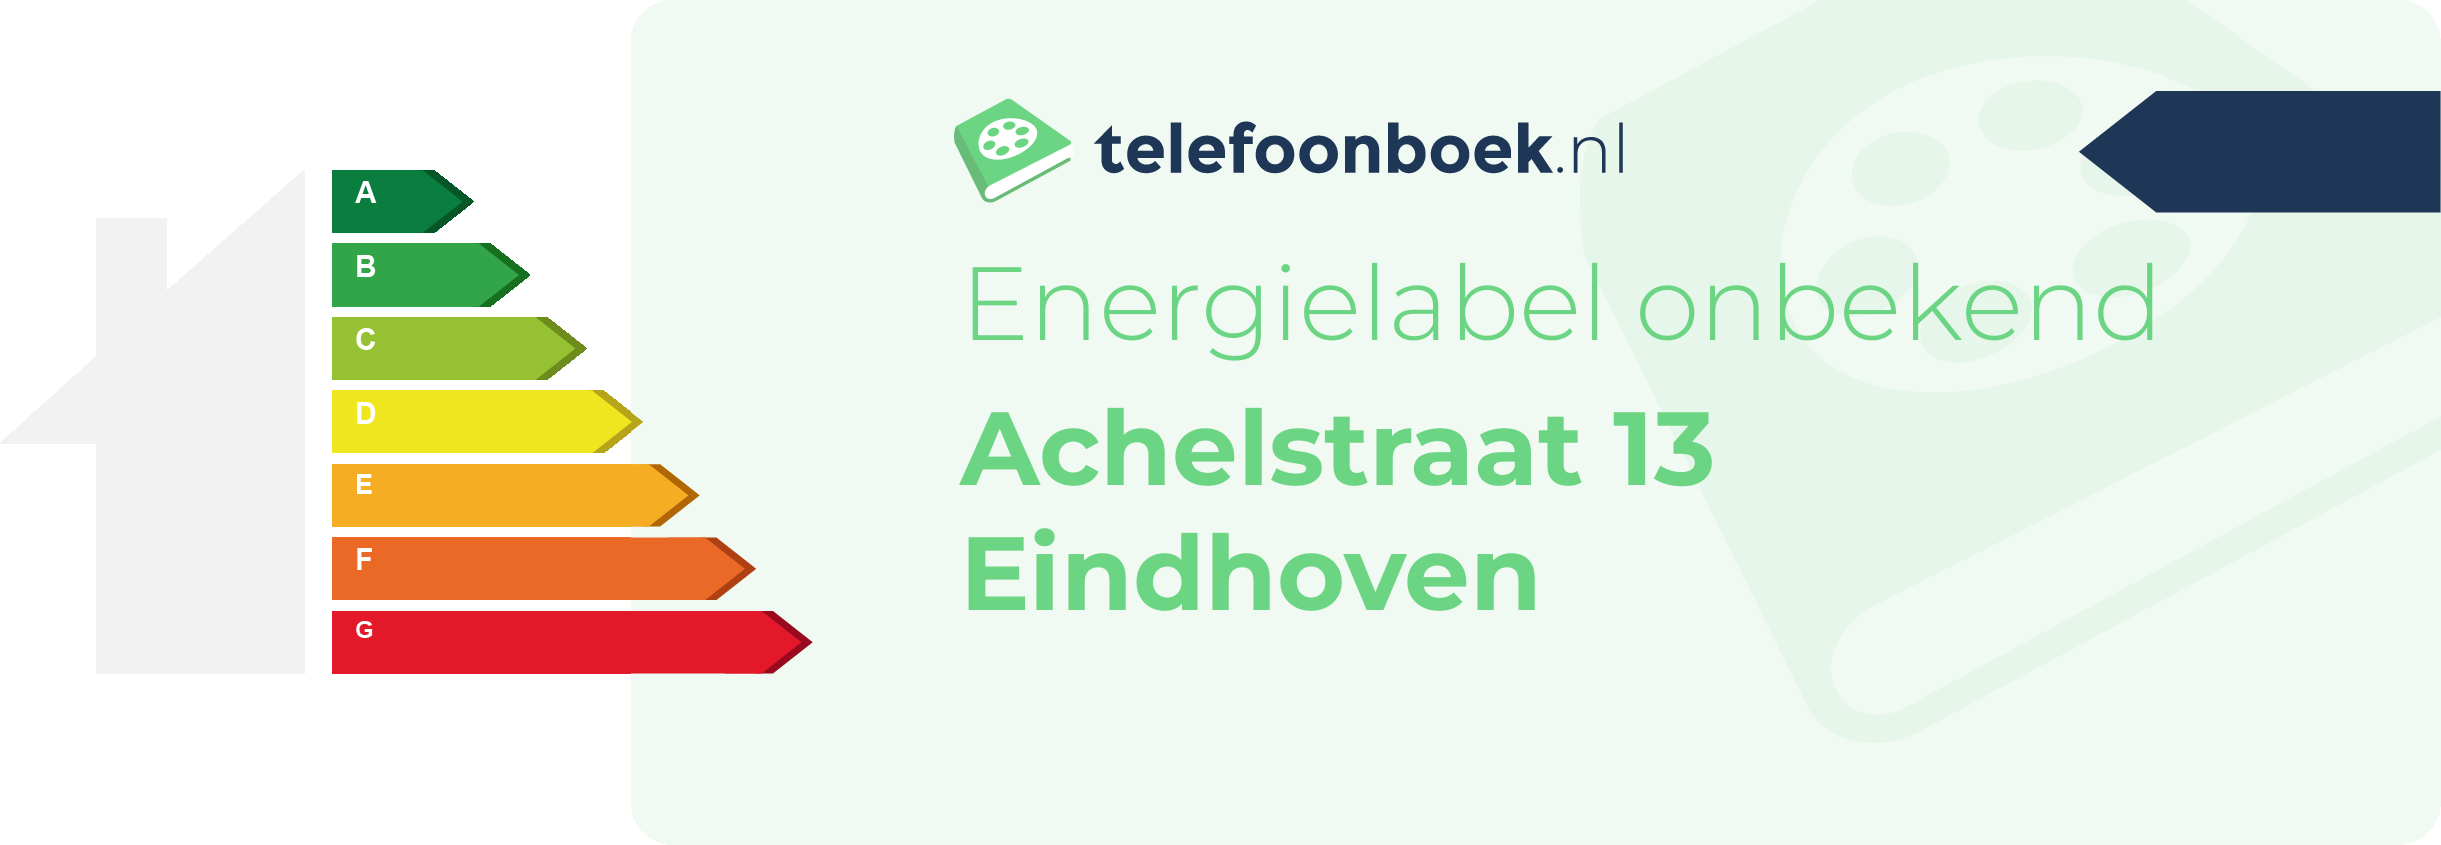 Energielabel Achelstraat 13 Eindhoven